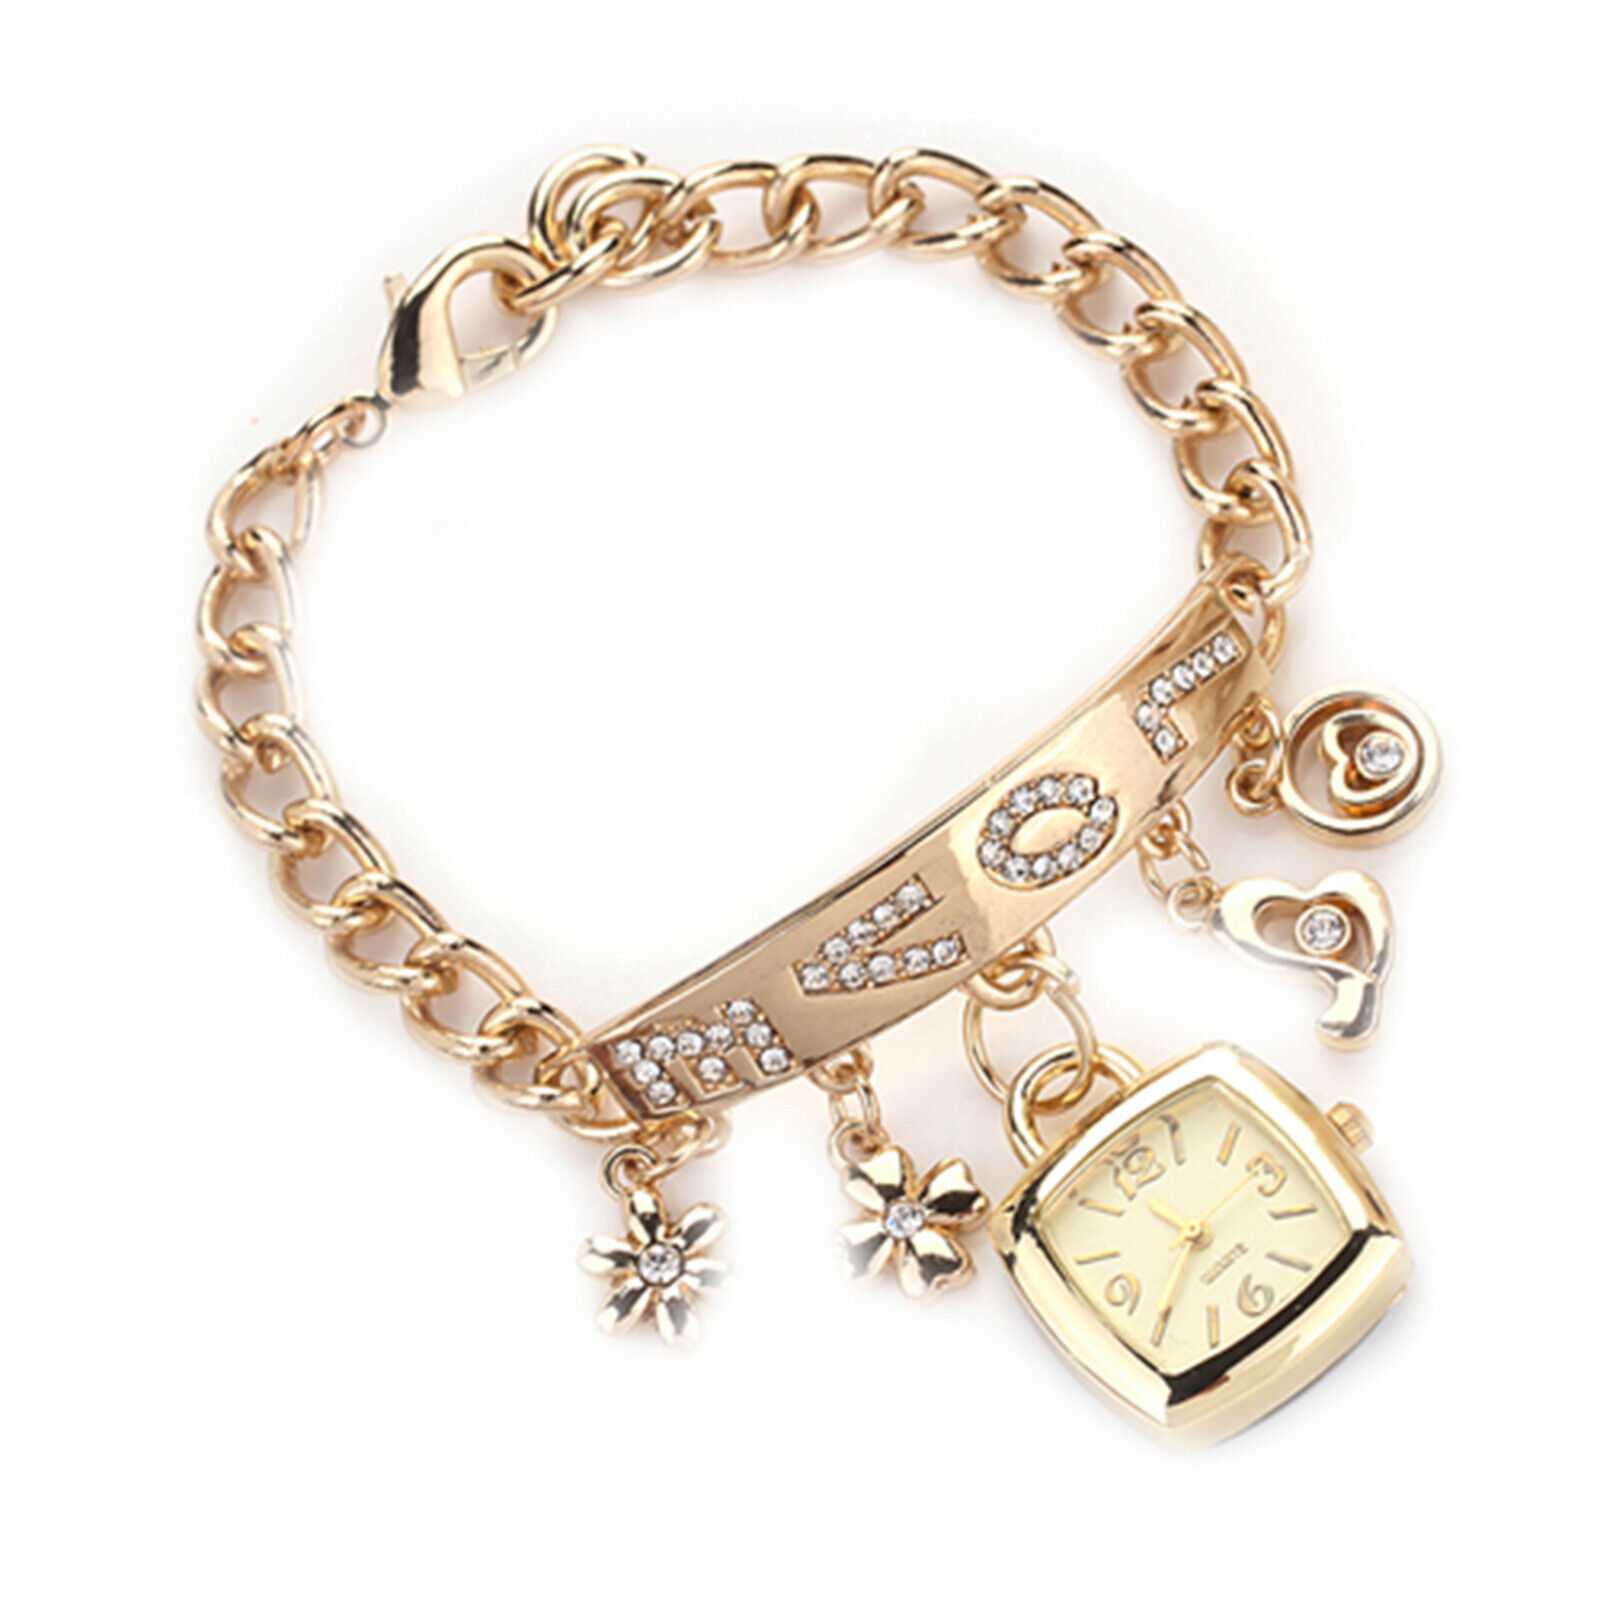 Jewelry Wristwatch Wear-resistant Shiny Surface Stylish Quartz Bracelet Watch Unbranded - фотография #7